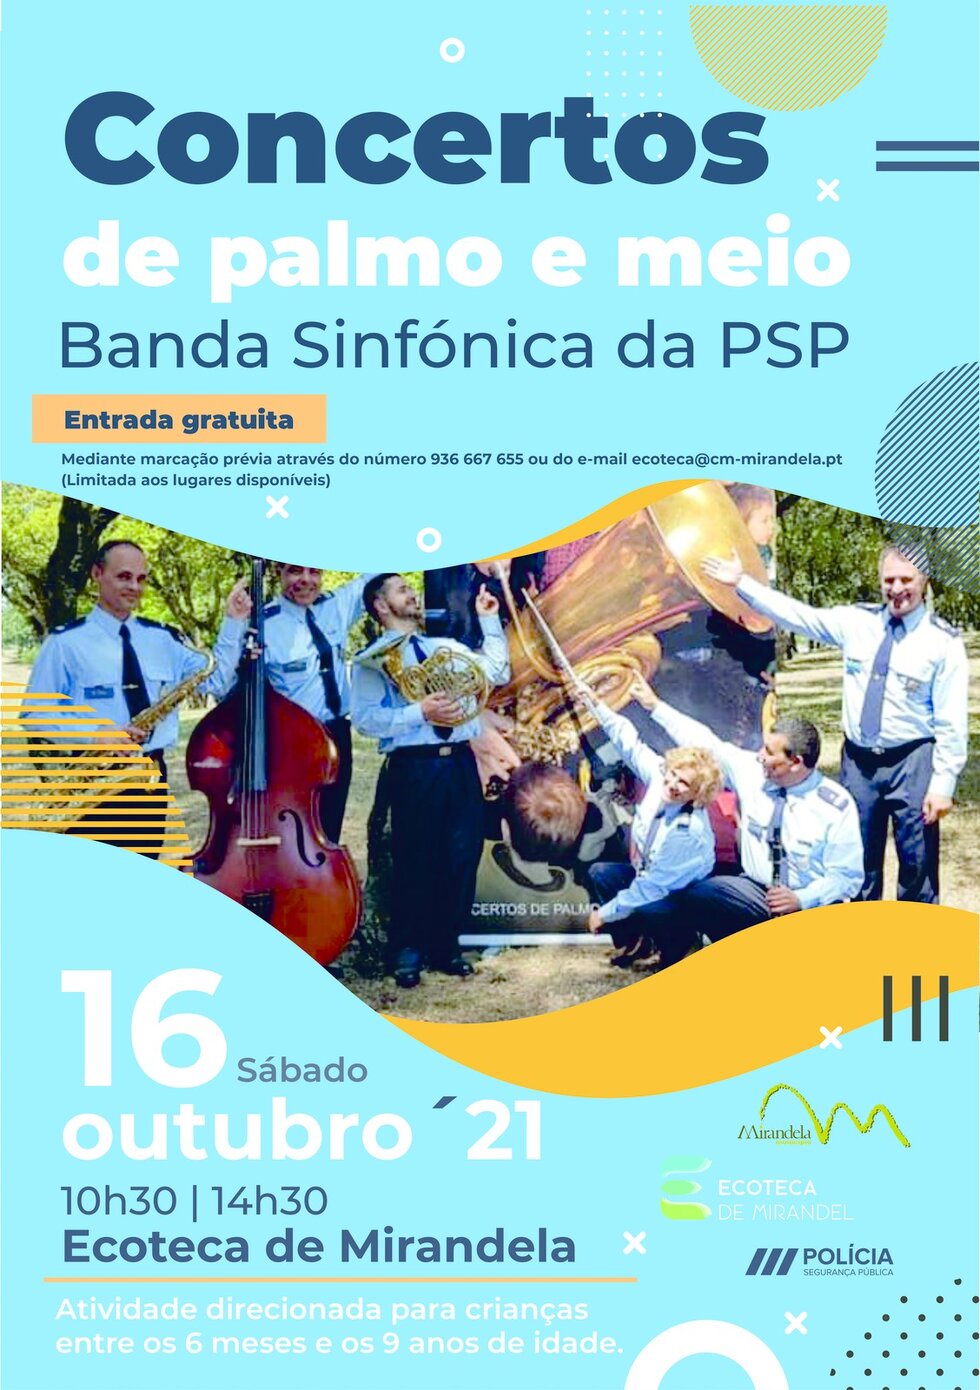 cartaz_concertos_palmo_e_meio_psp_21